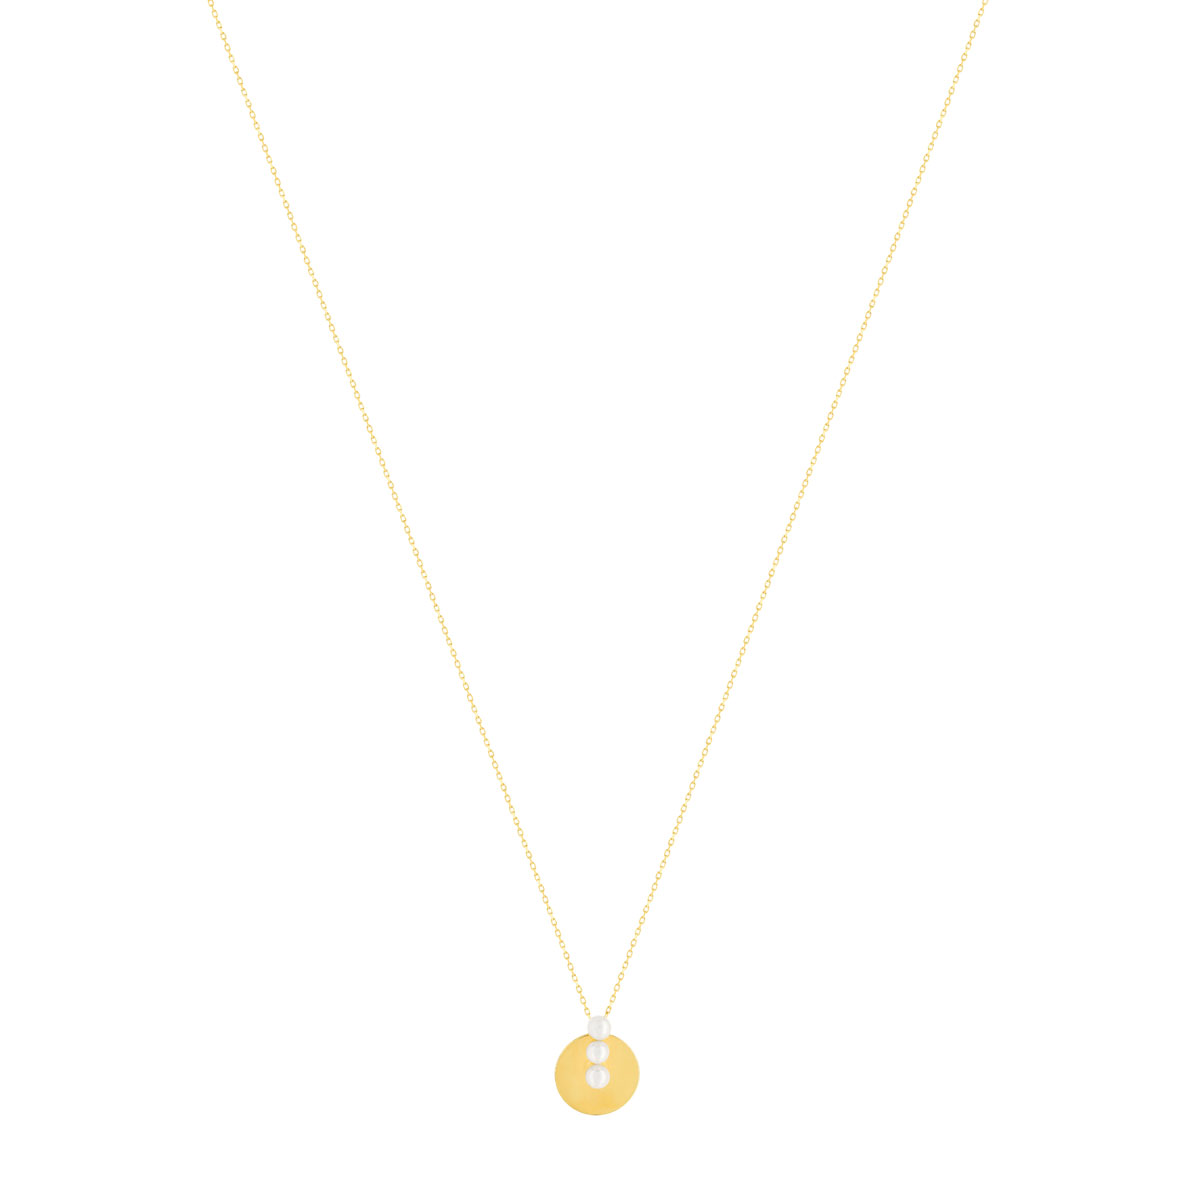 Collier or jaune 375, perles de culture de Chine. Longueur 45 cm. - vue 2